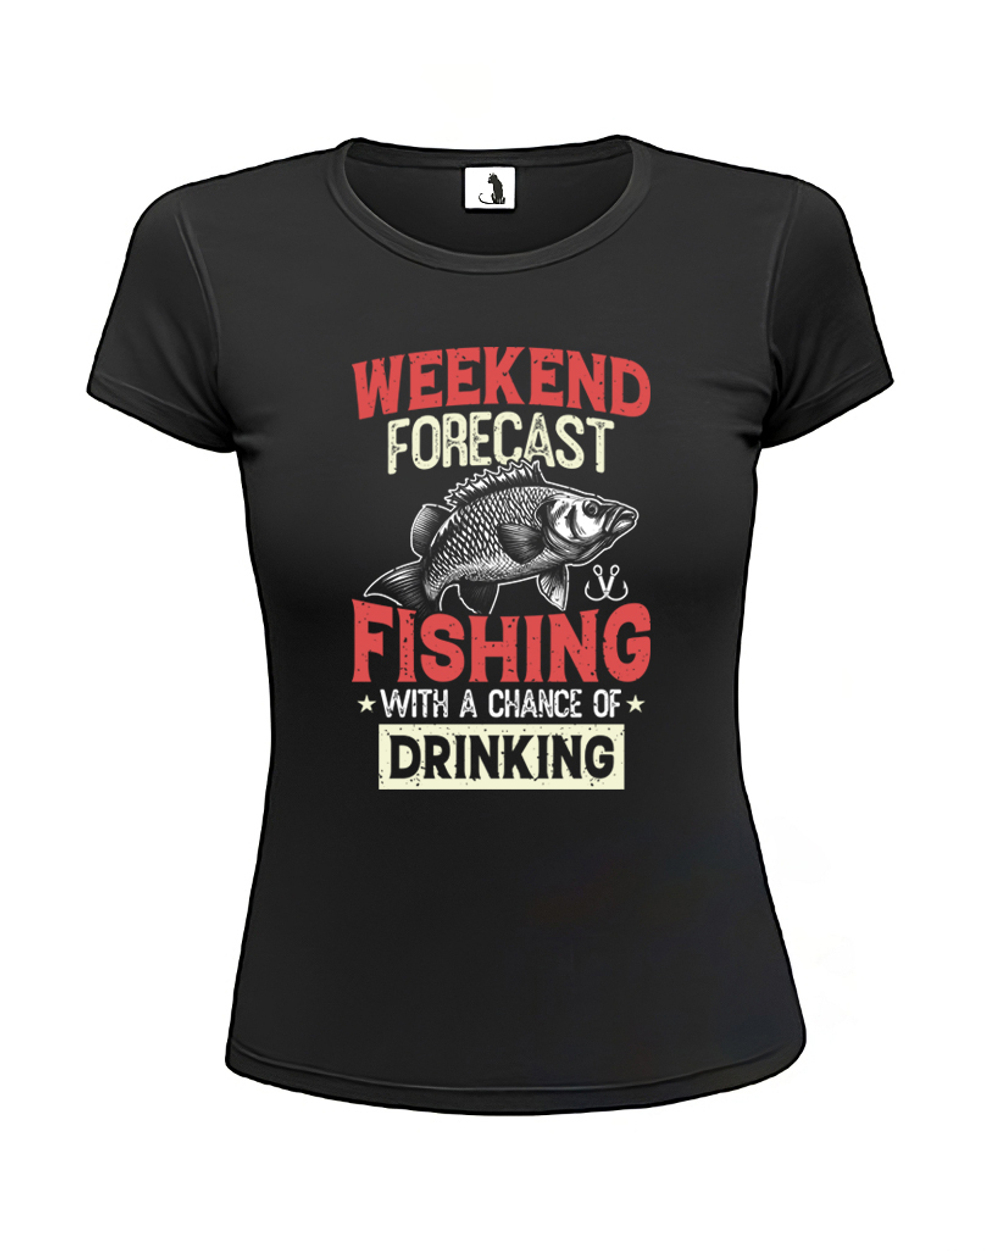 Футболка про рыбалку Weekend Fishing женская приталенная черная